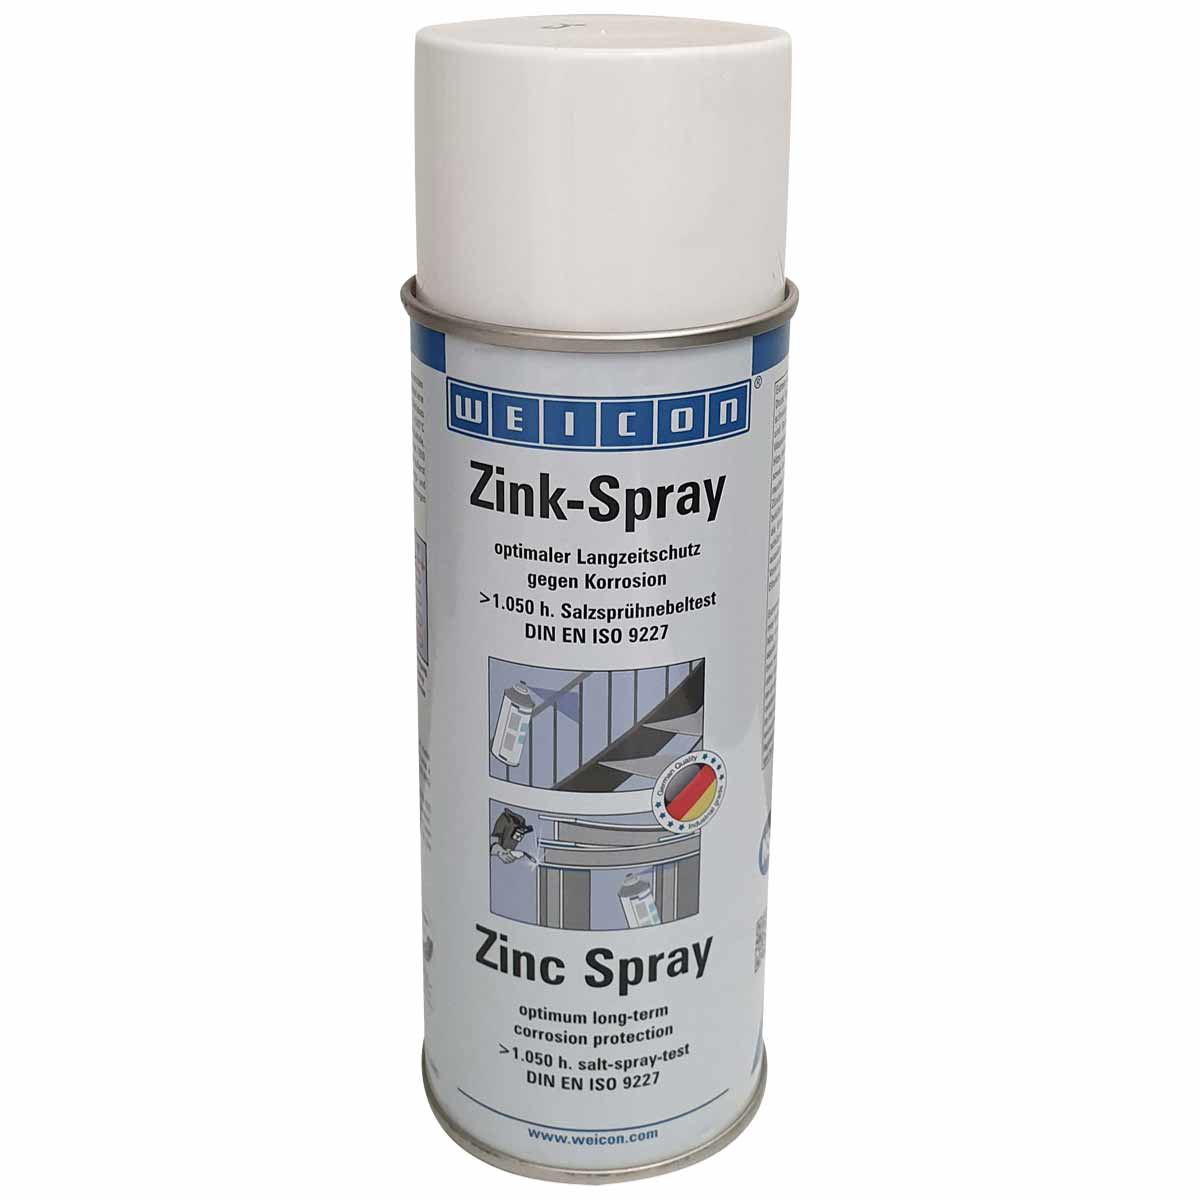 3172اسپری آبکاری سرد زینک (روی) مات ویکن WEICON Zinc Spray